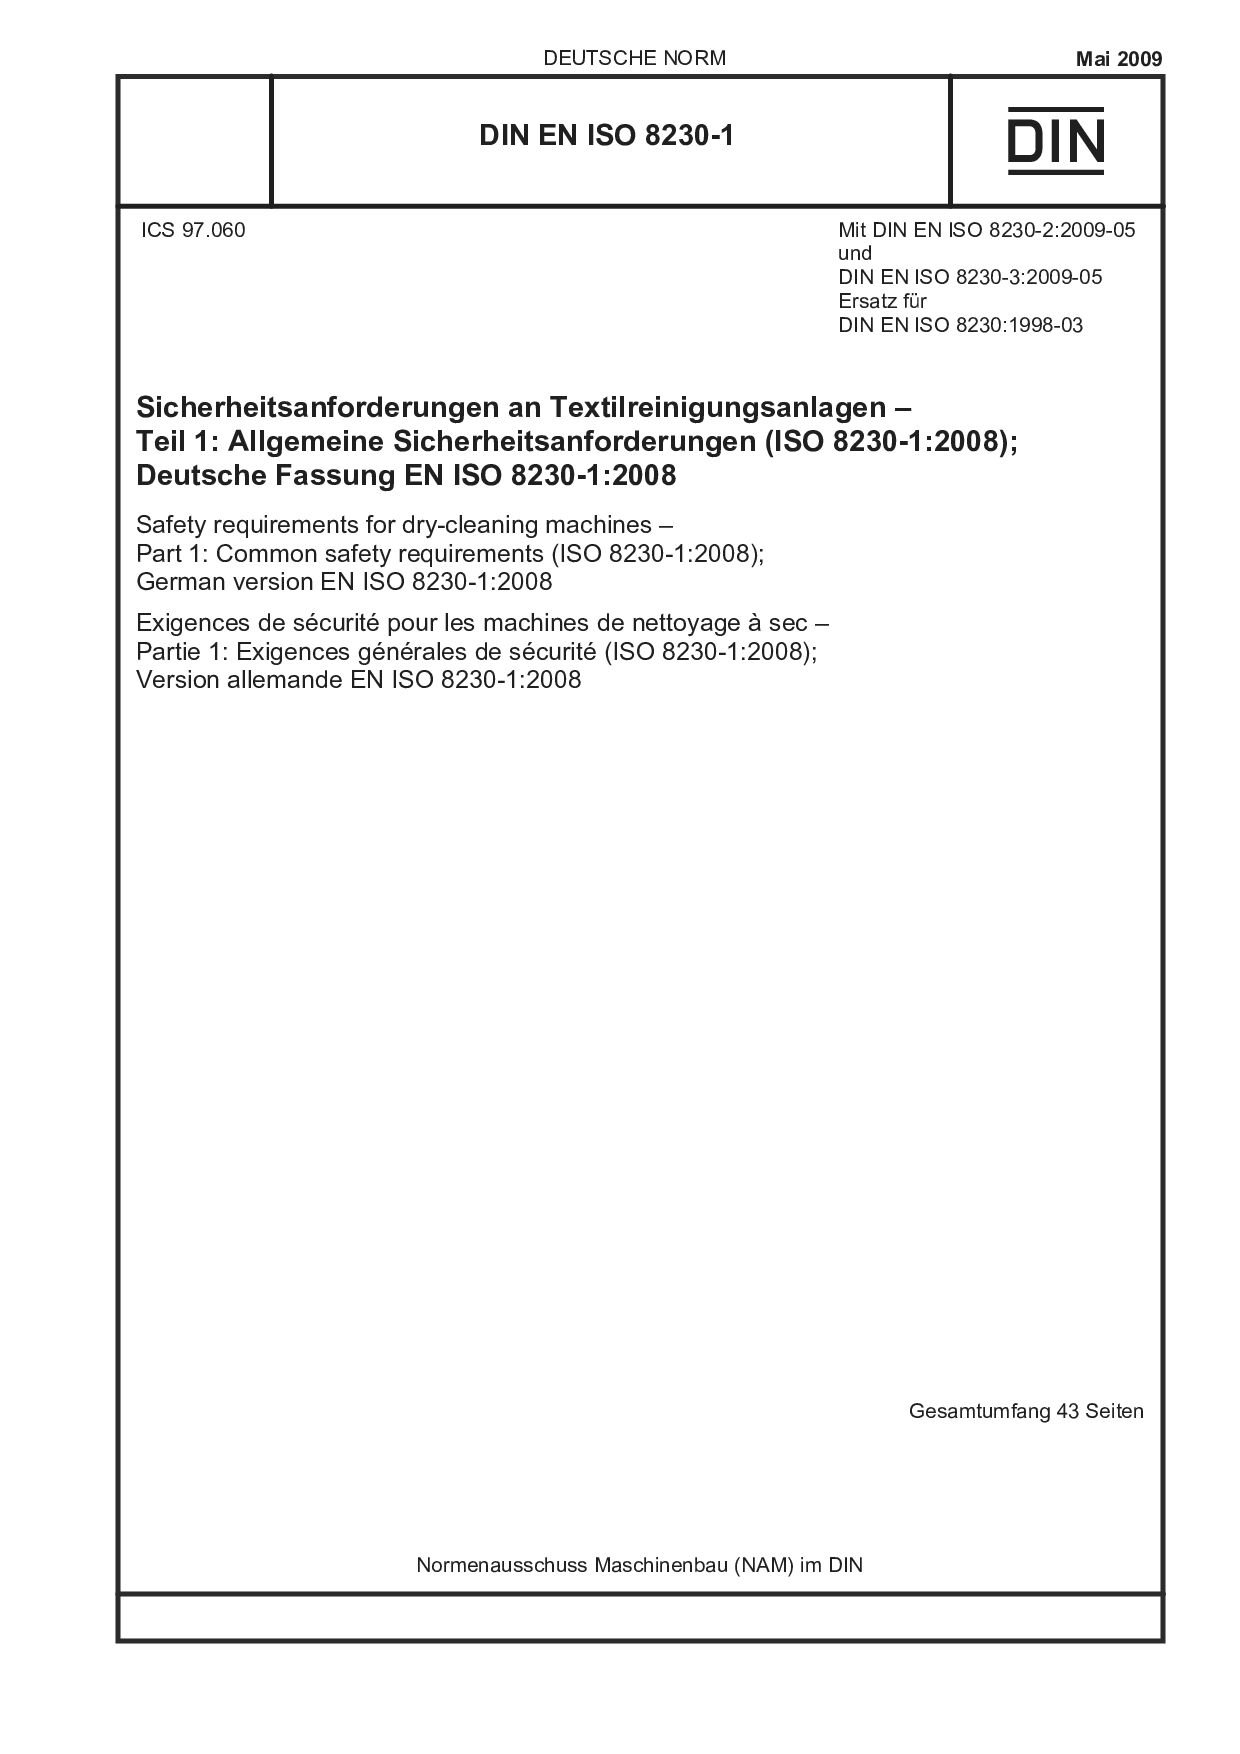 DIN EN ISO 8230-1:2009